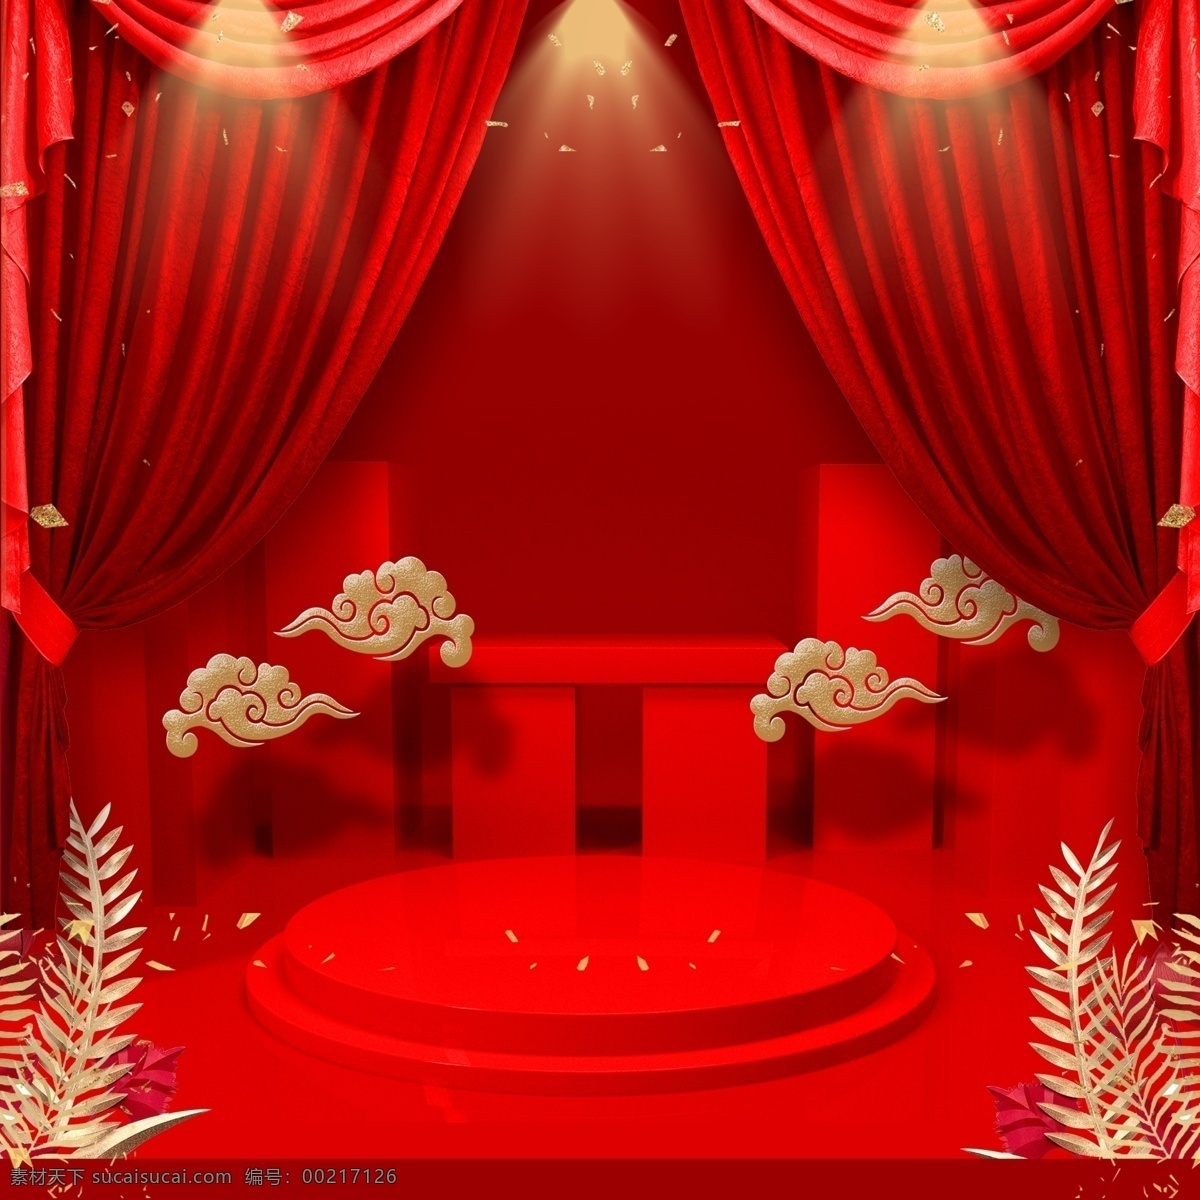 红色 中国 风 主 图 背景 红色幕布 金色叶子 金色云 红色舞台 主图背景 背景素材 直通车